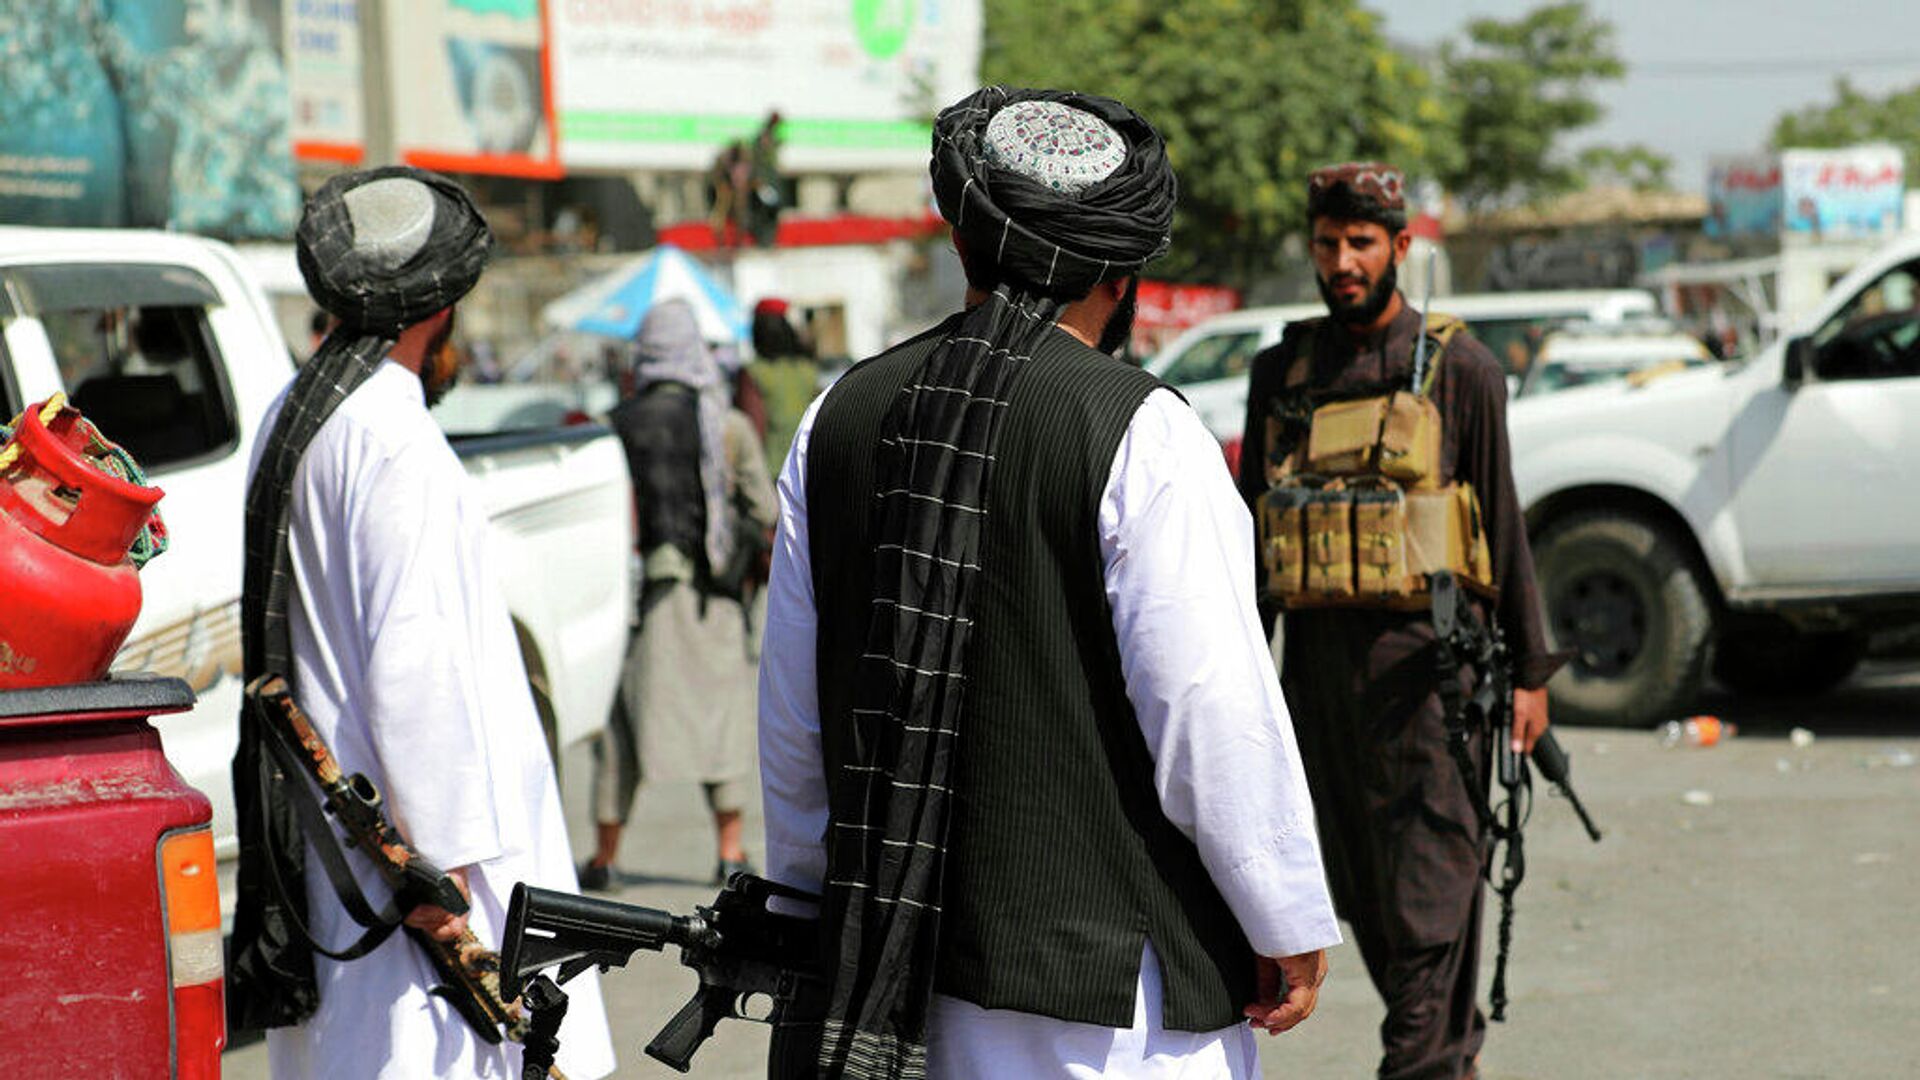 Боевики движения Талибан (признано в России запрещенной террористической организацией) перед международным аэропортом имени Хамида Карзая в Кабуле, Афганистан. 16 августа 2021 года - РИА Новости, 1920, 13.09.2021